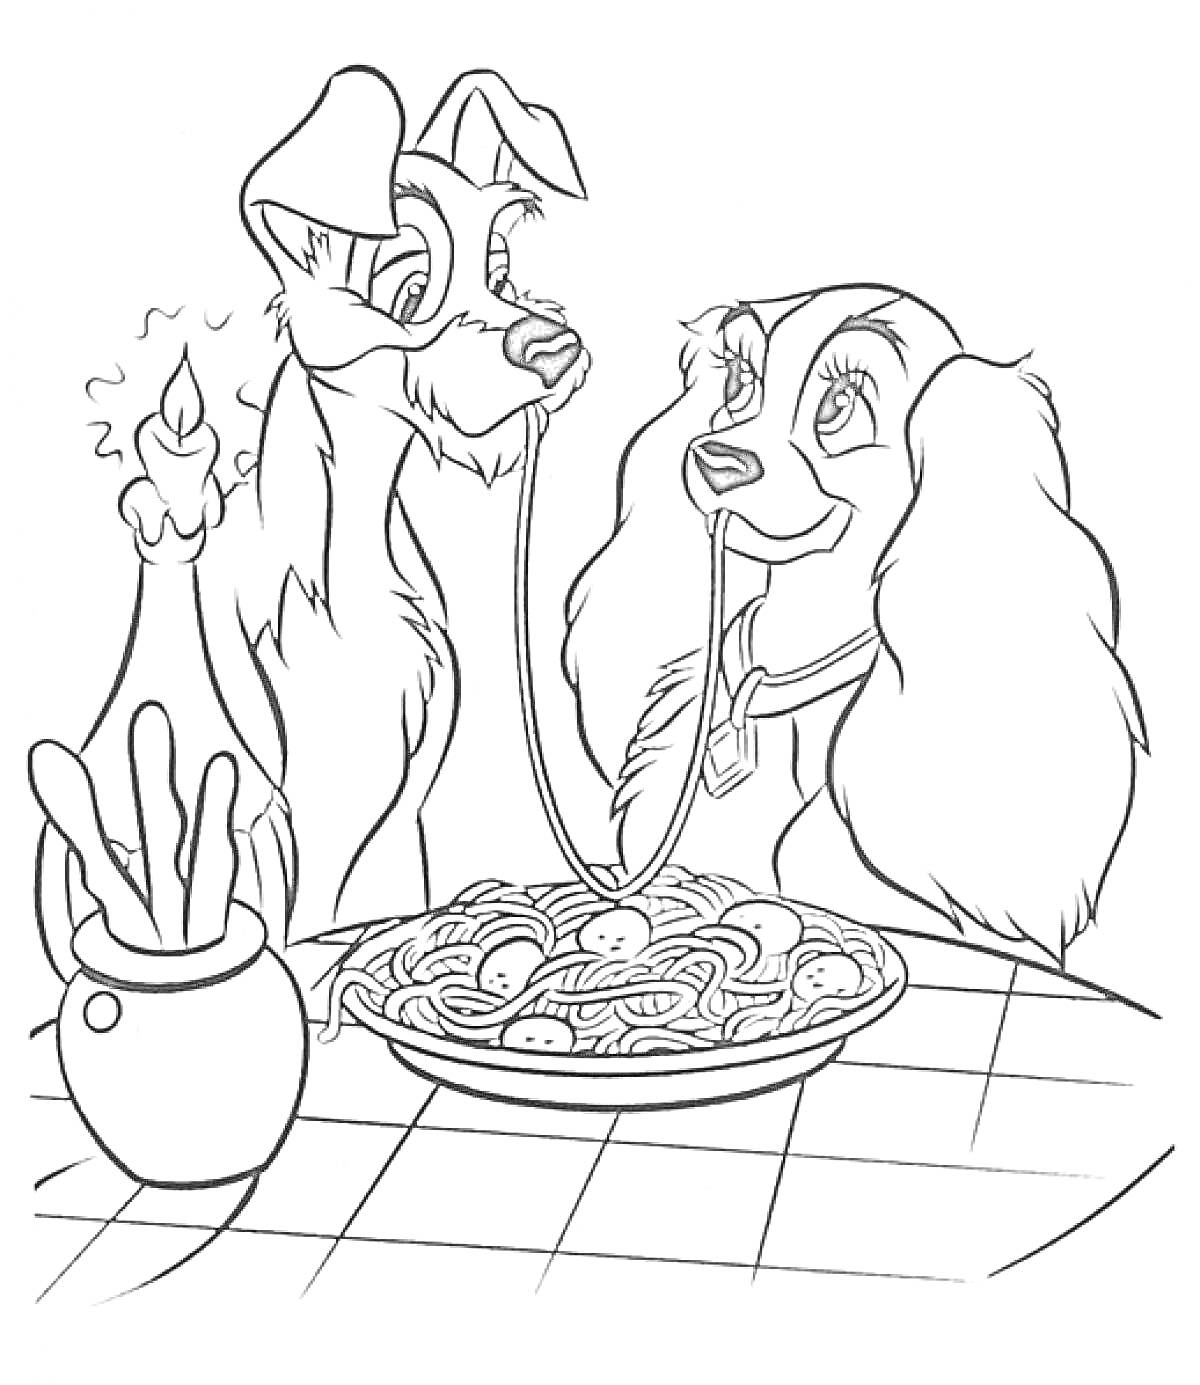 Два пса за столом с миской спагетти, свеча, ваза с хлебными палочками